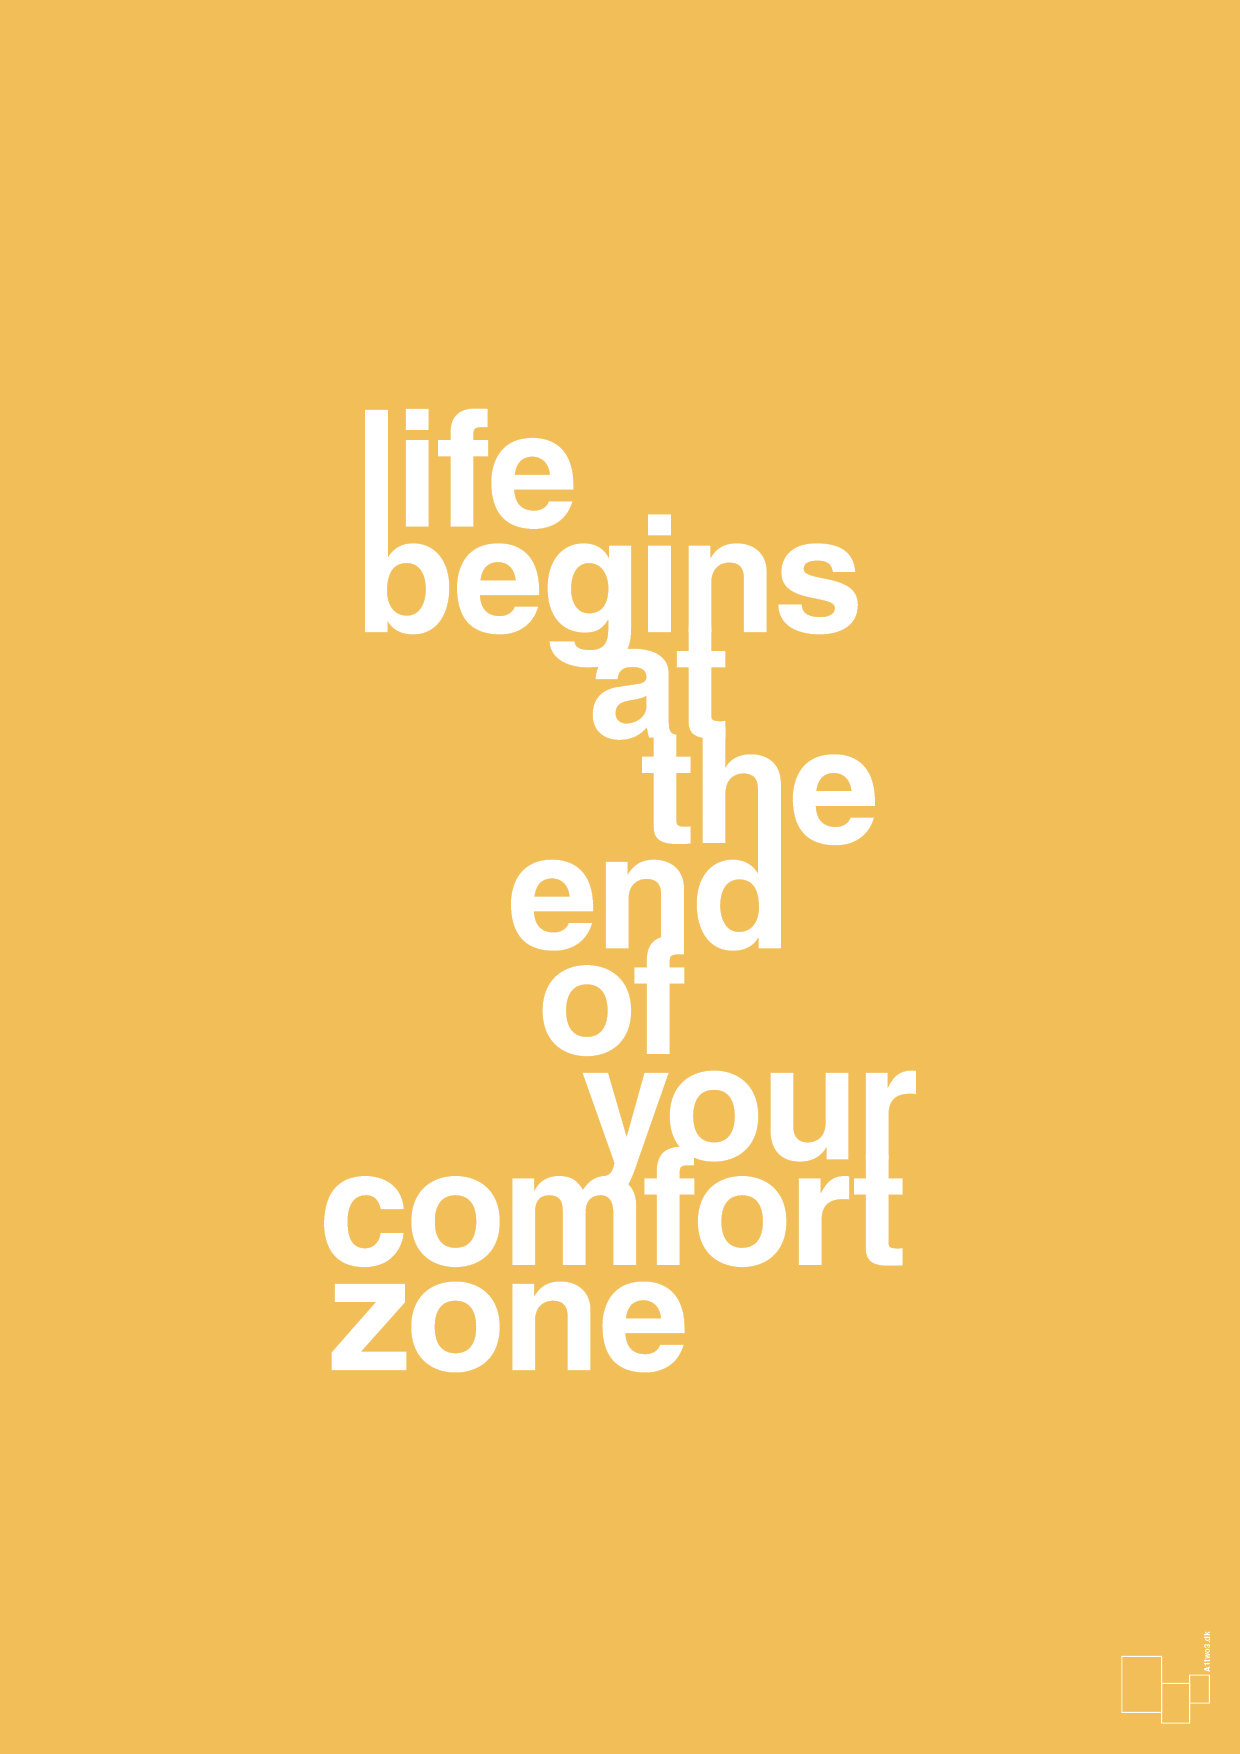 life begins at the end of your comfort zone - Plakat med Ordsprog i Honeycomb